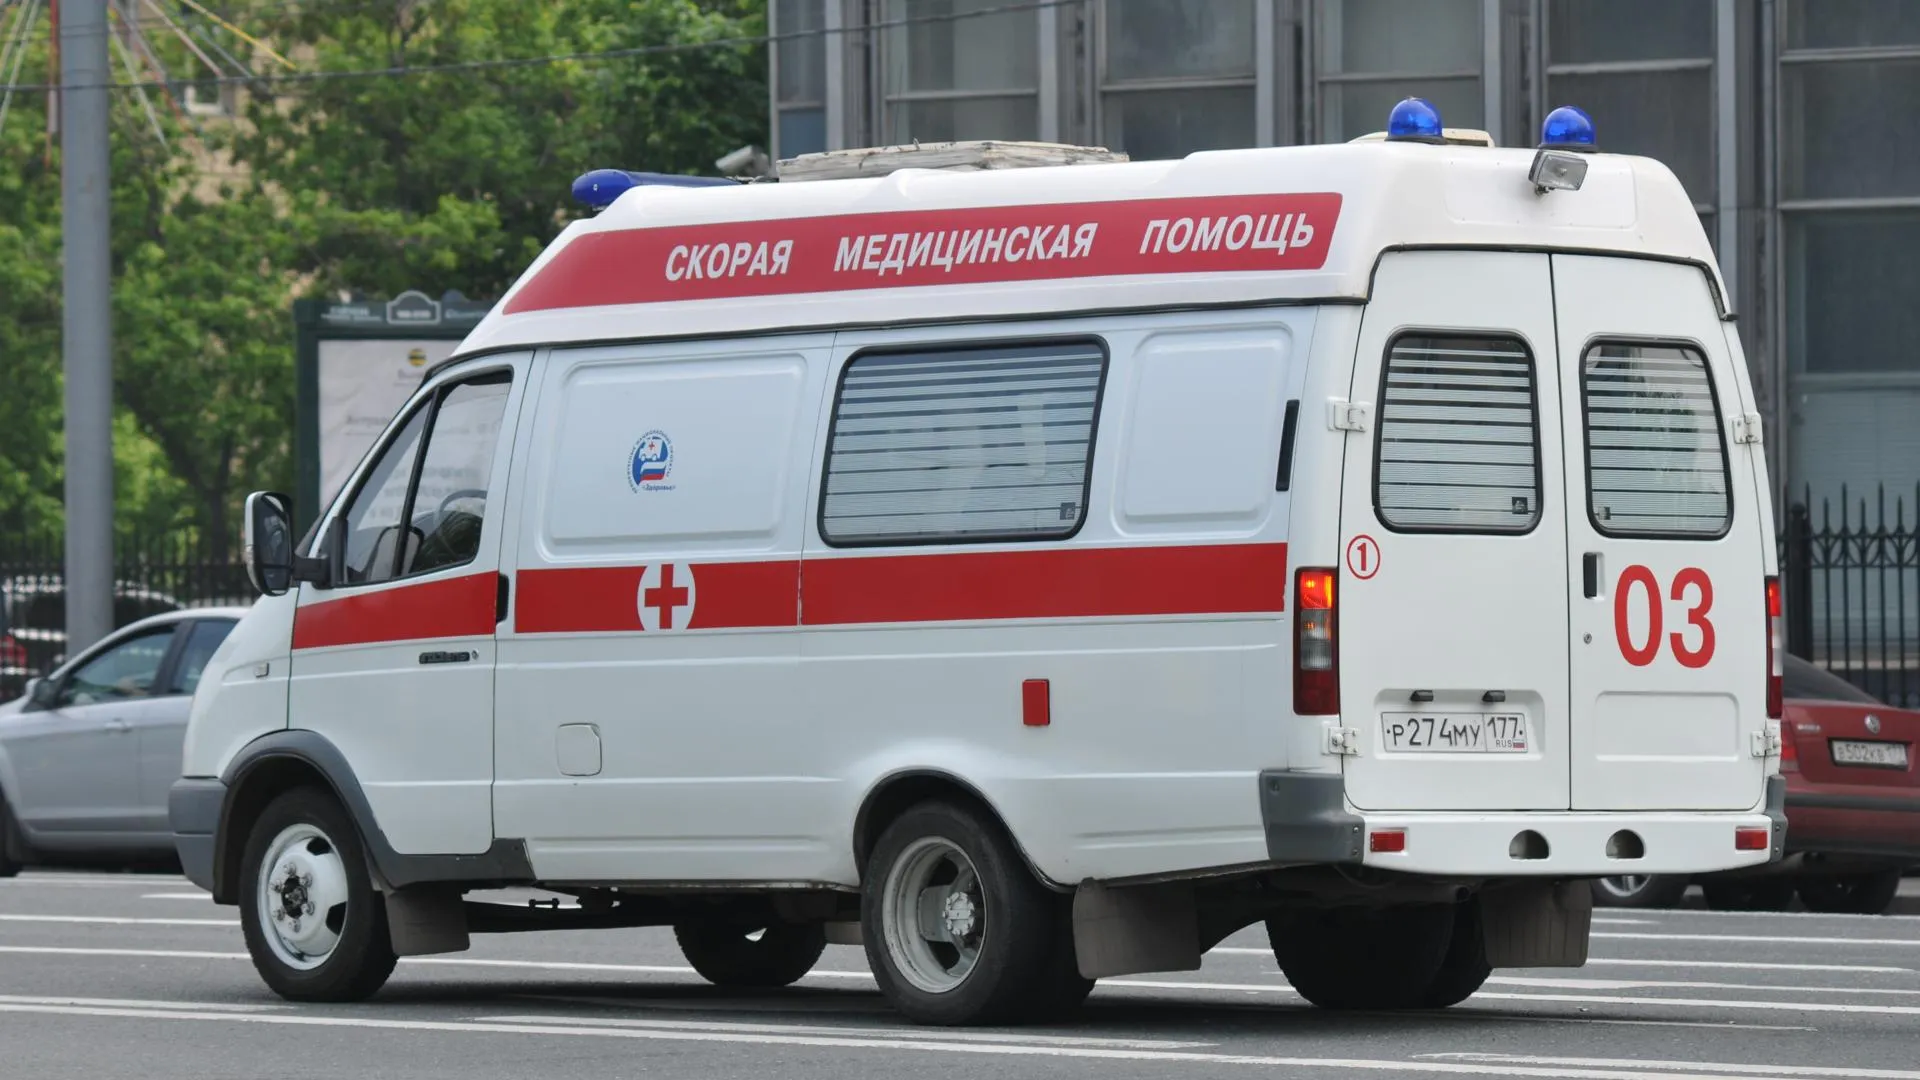 Двухмесячный ребенок найден мертвым в квартире в Пушкино